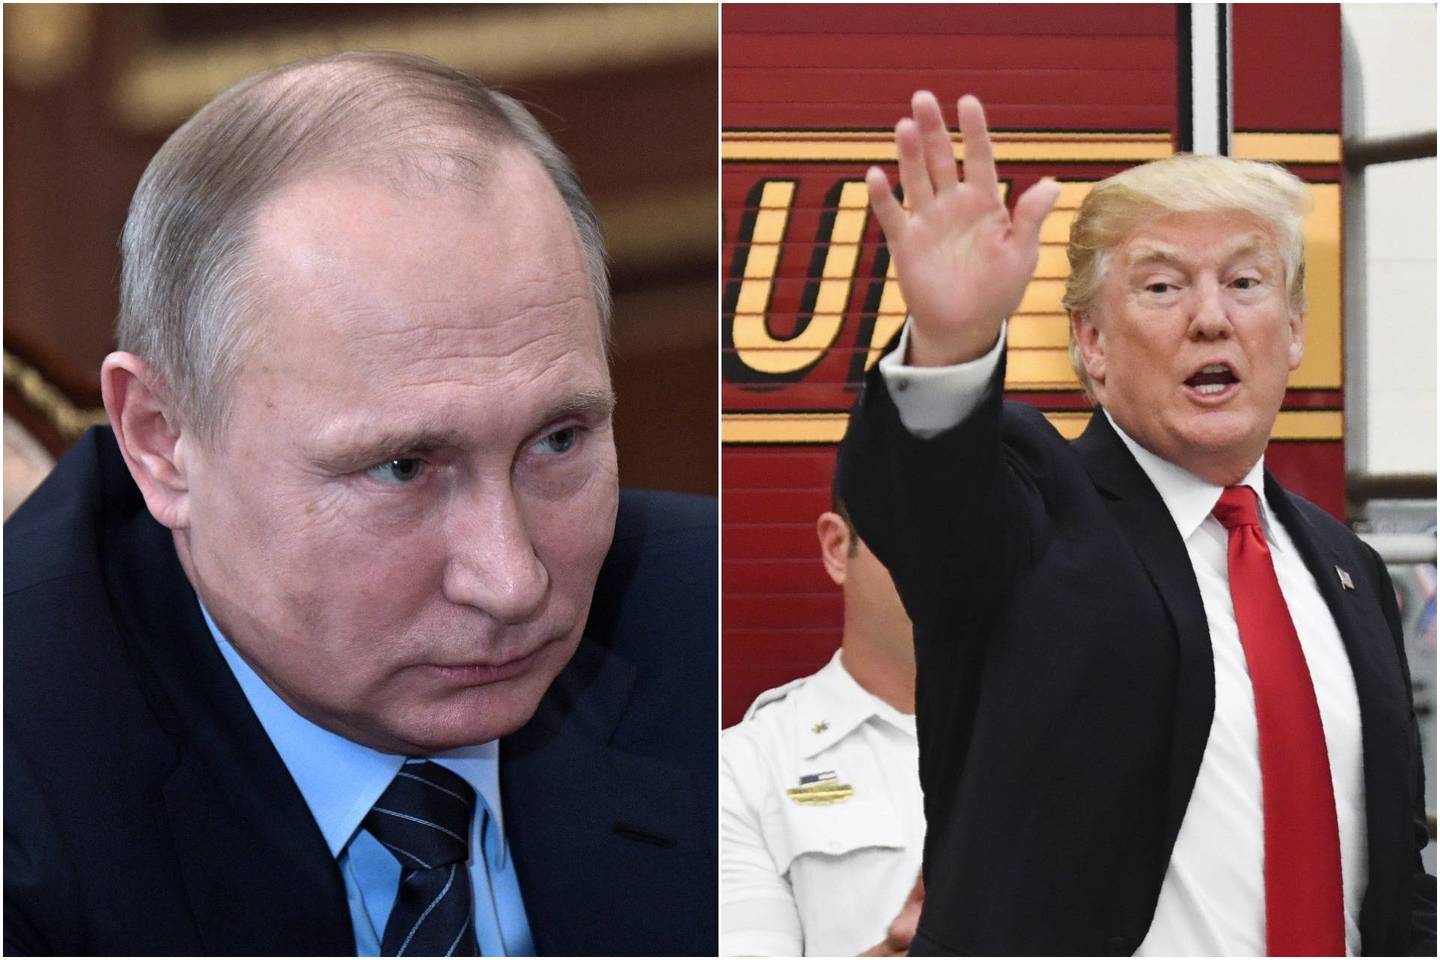  V.Putinas nusiuntė D.Trumpui telegramą su linkėjimais.<br> lrytas.lt montažas